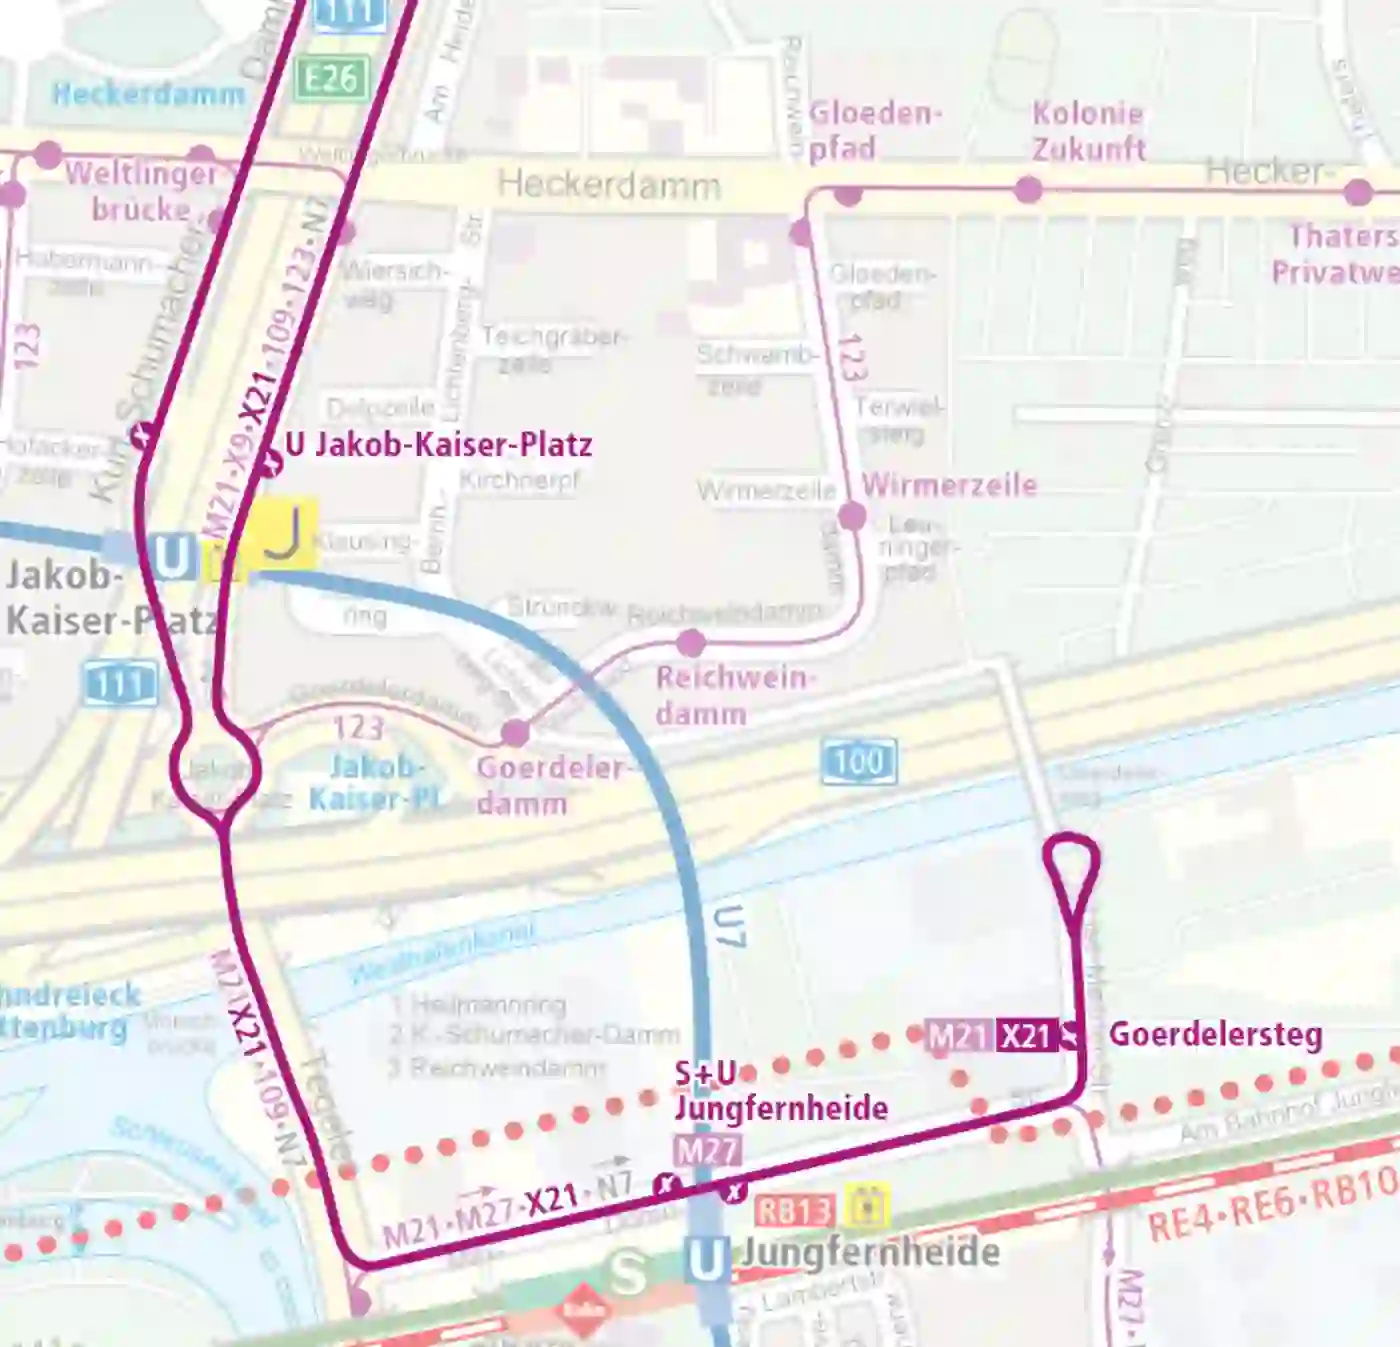 Bus Karte der Linie X21 zum Fahrplanwechsel 2021